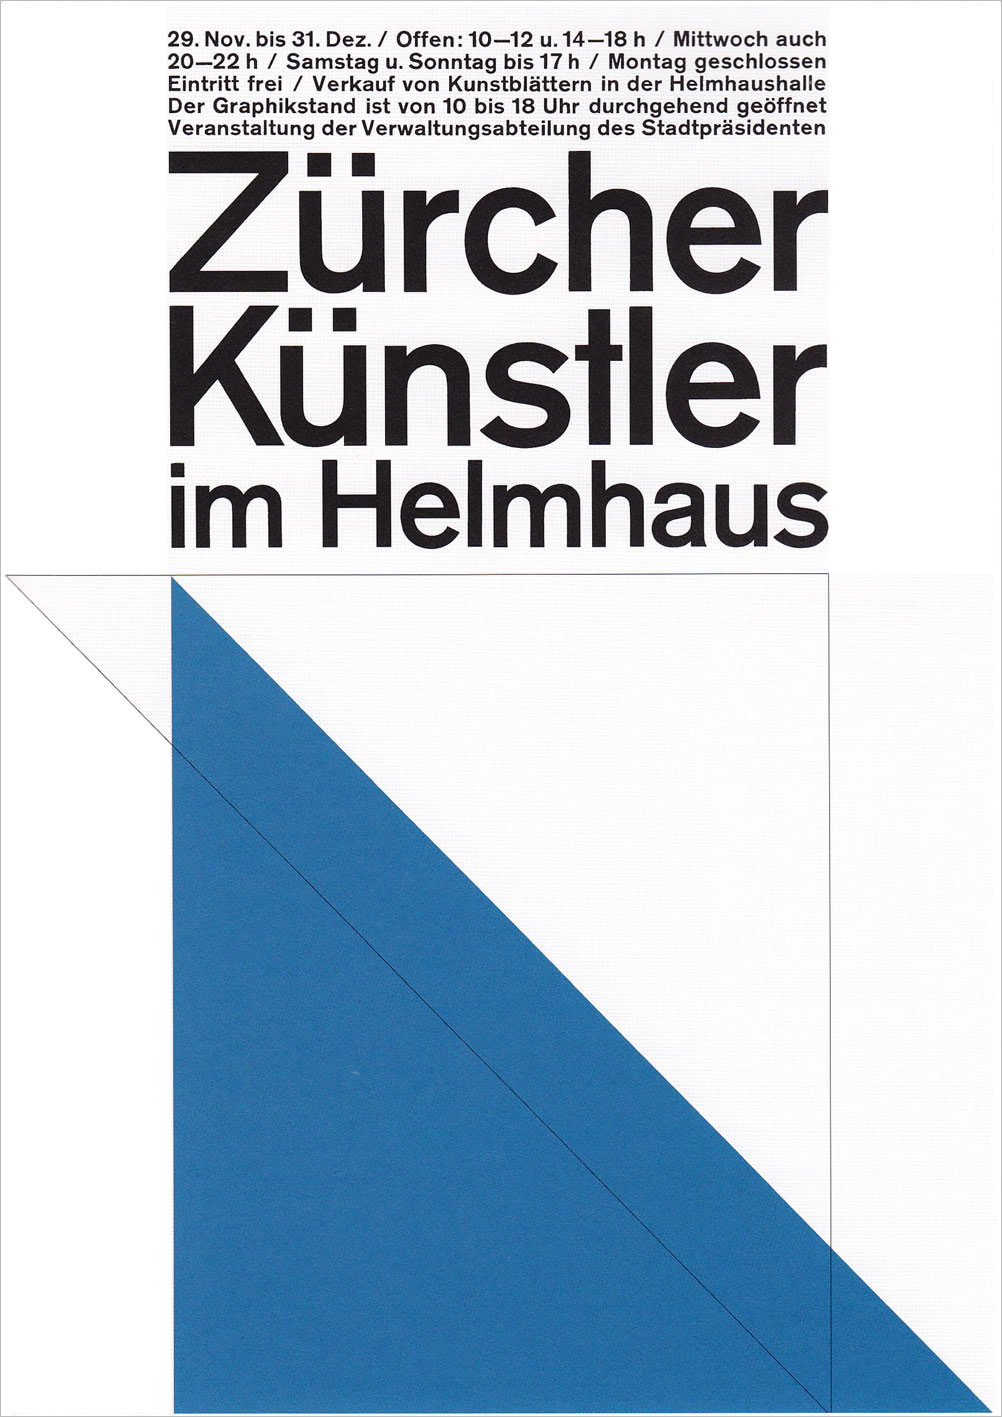 Richard Paul Lohse: Zürcher Künstler im Helmhaus, 1964